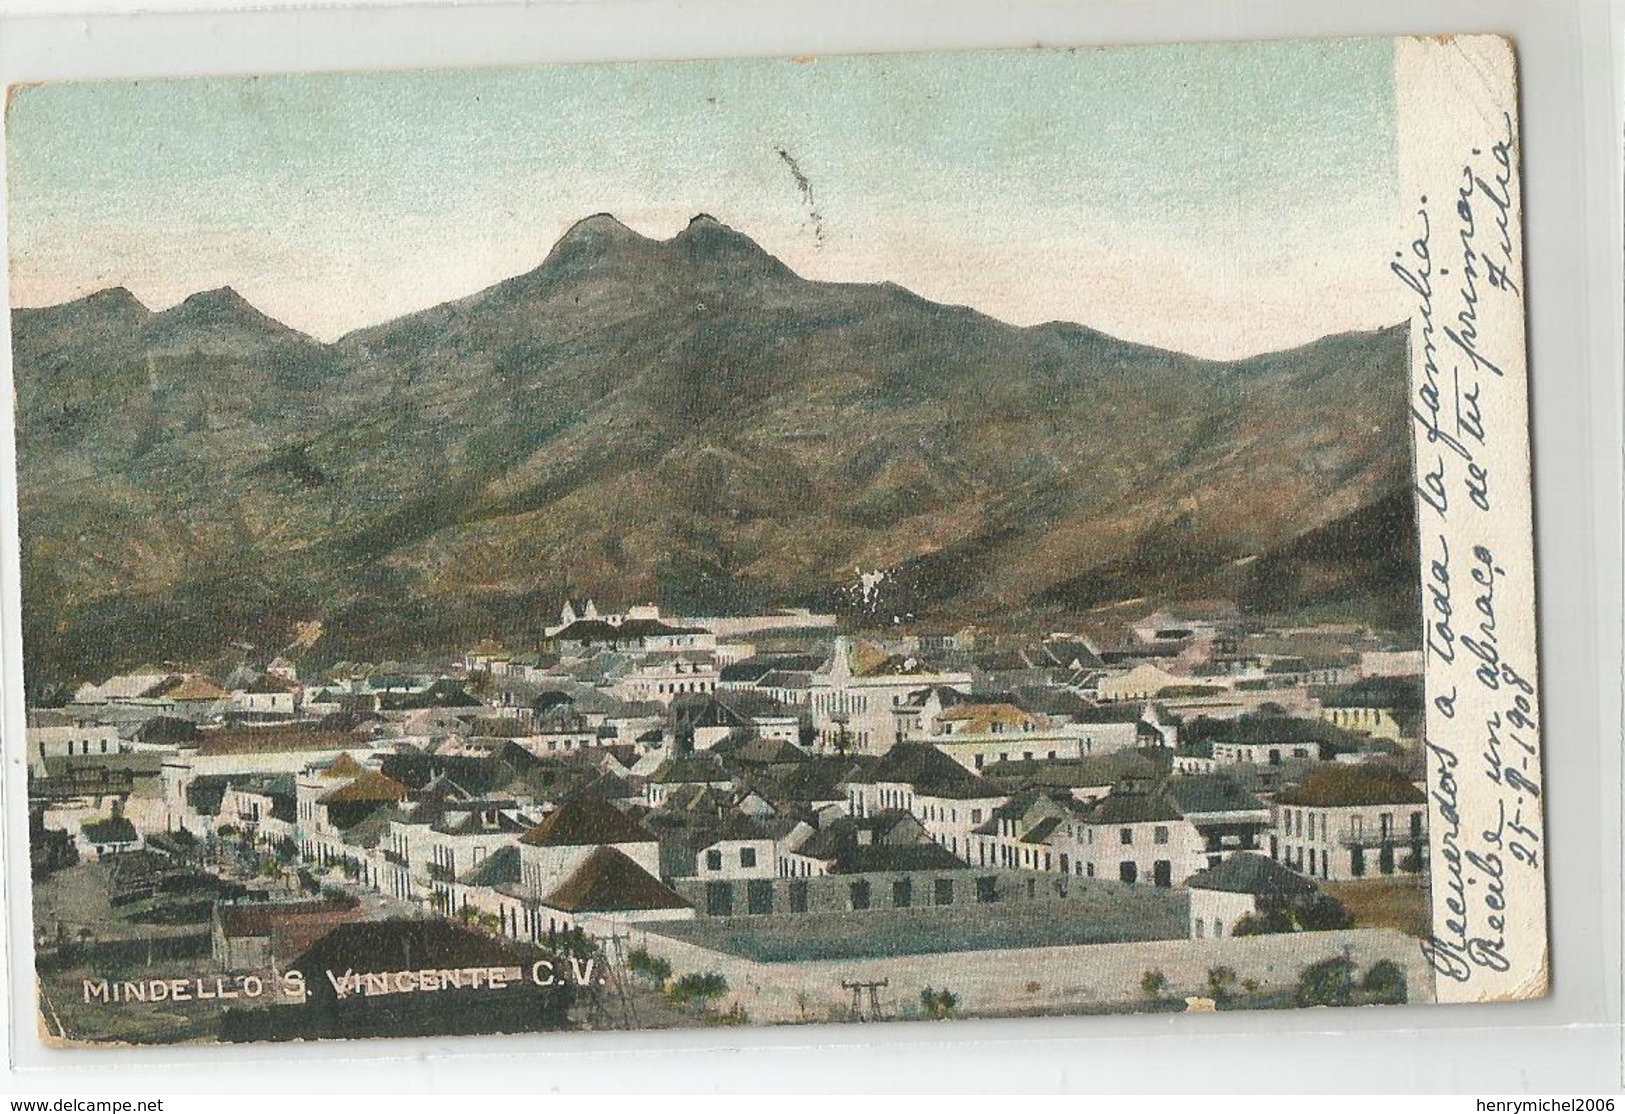 Afrique - Cap Vert Mindello S Vincente Cv Pour France Via Madeira Lisboa 1908 - 2scans - Cabo Verde